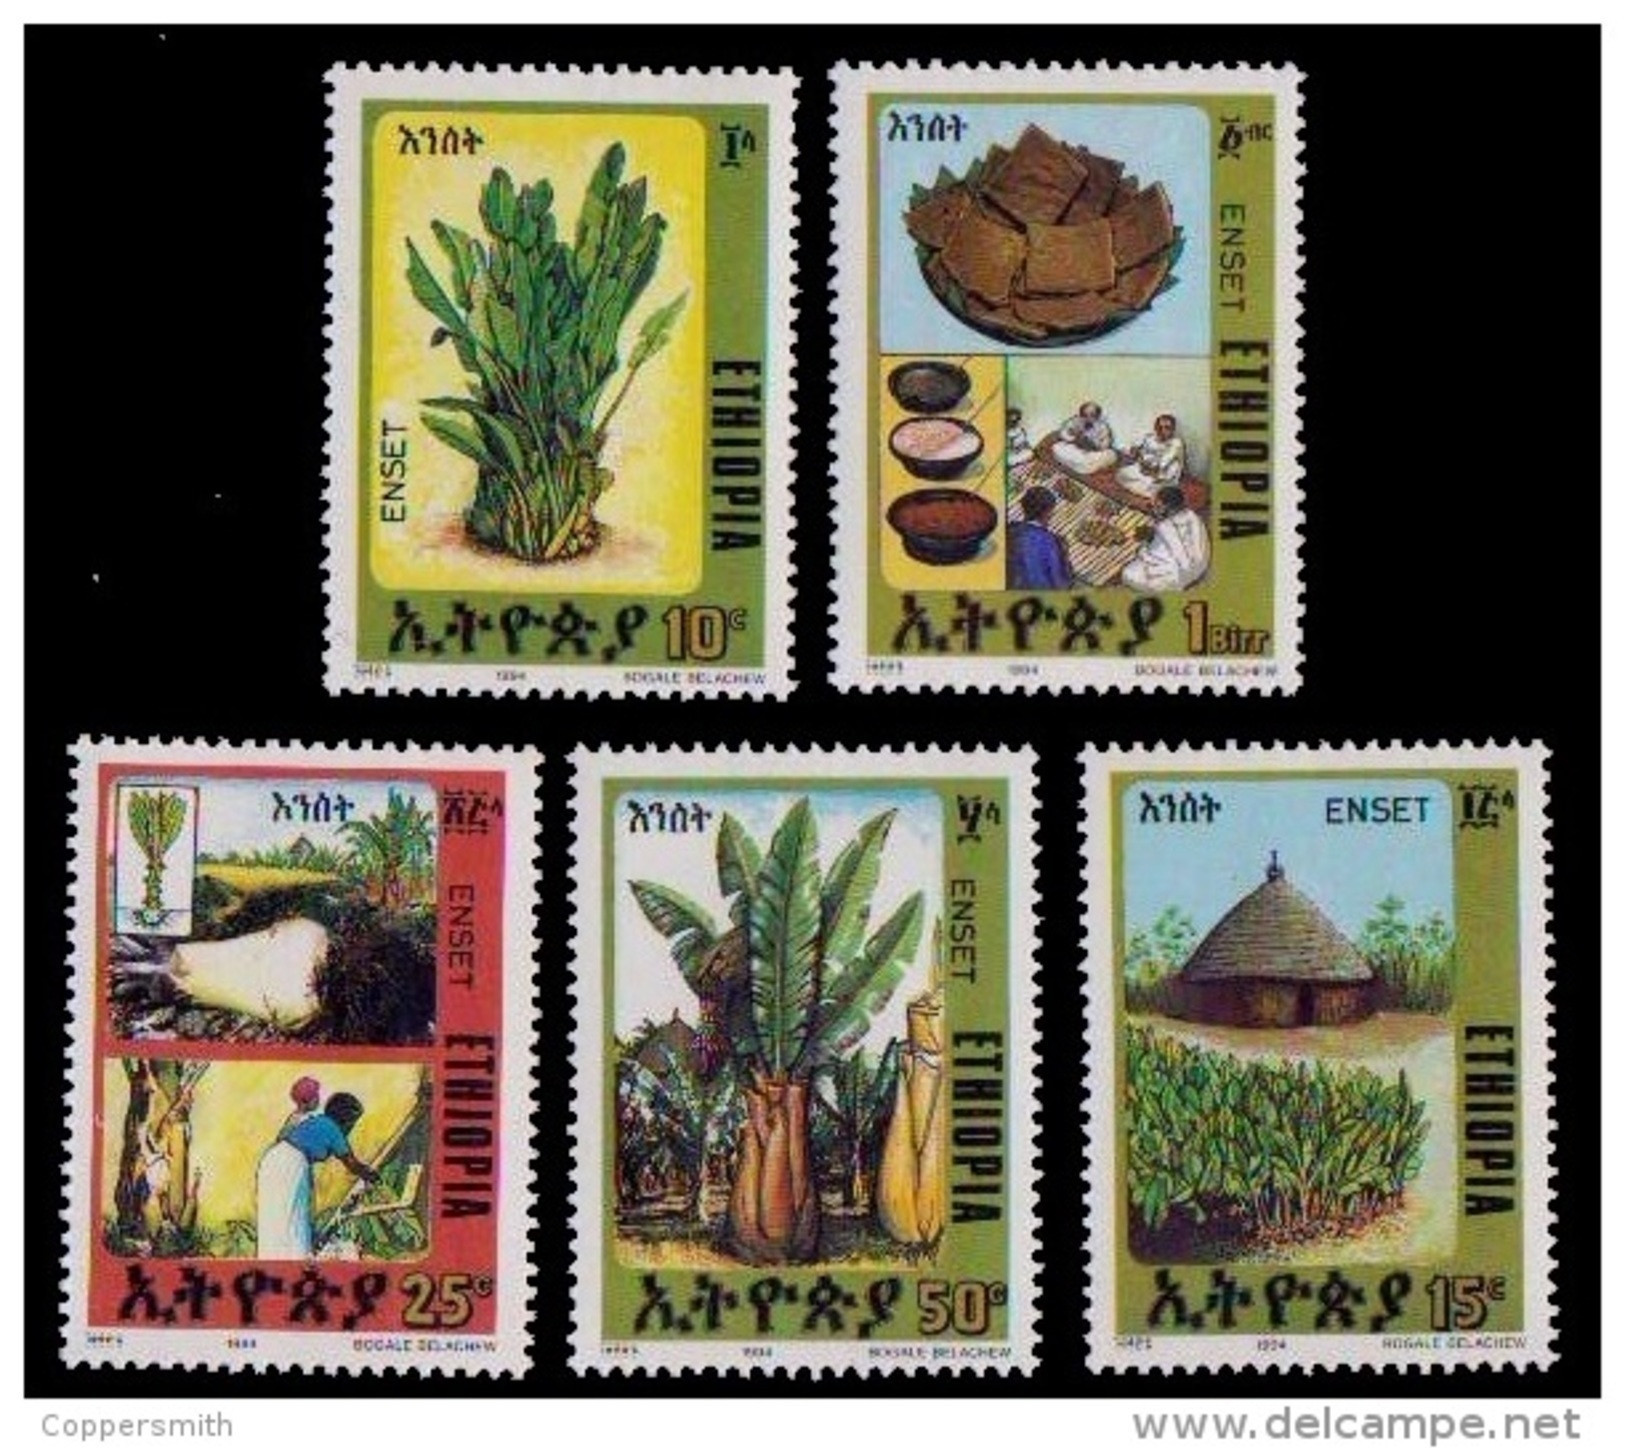 (356) Ethiopia / Ethiopie  Plants / Flora / Fruits / Bananas / Früchte / 1994 ** / Mnh  Michel 1477-81 - Äthiopien